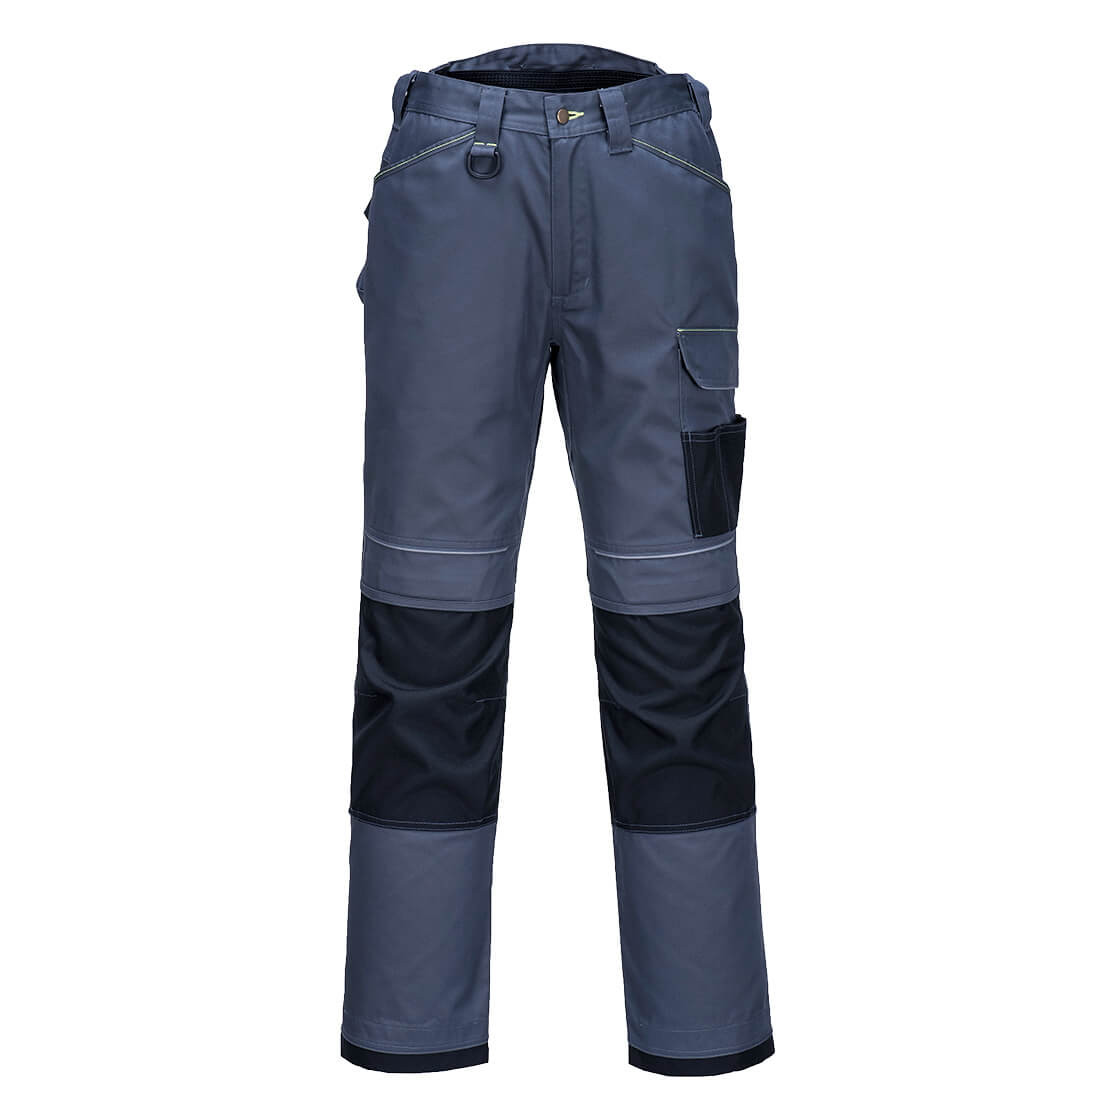 Pantalon extensible léger PW3 - Les vêtements de protection